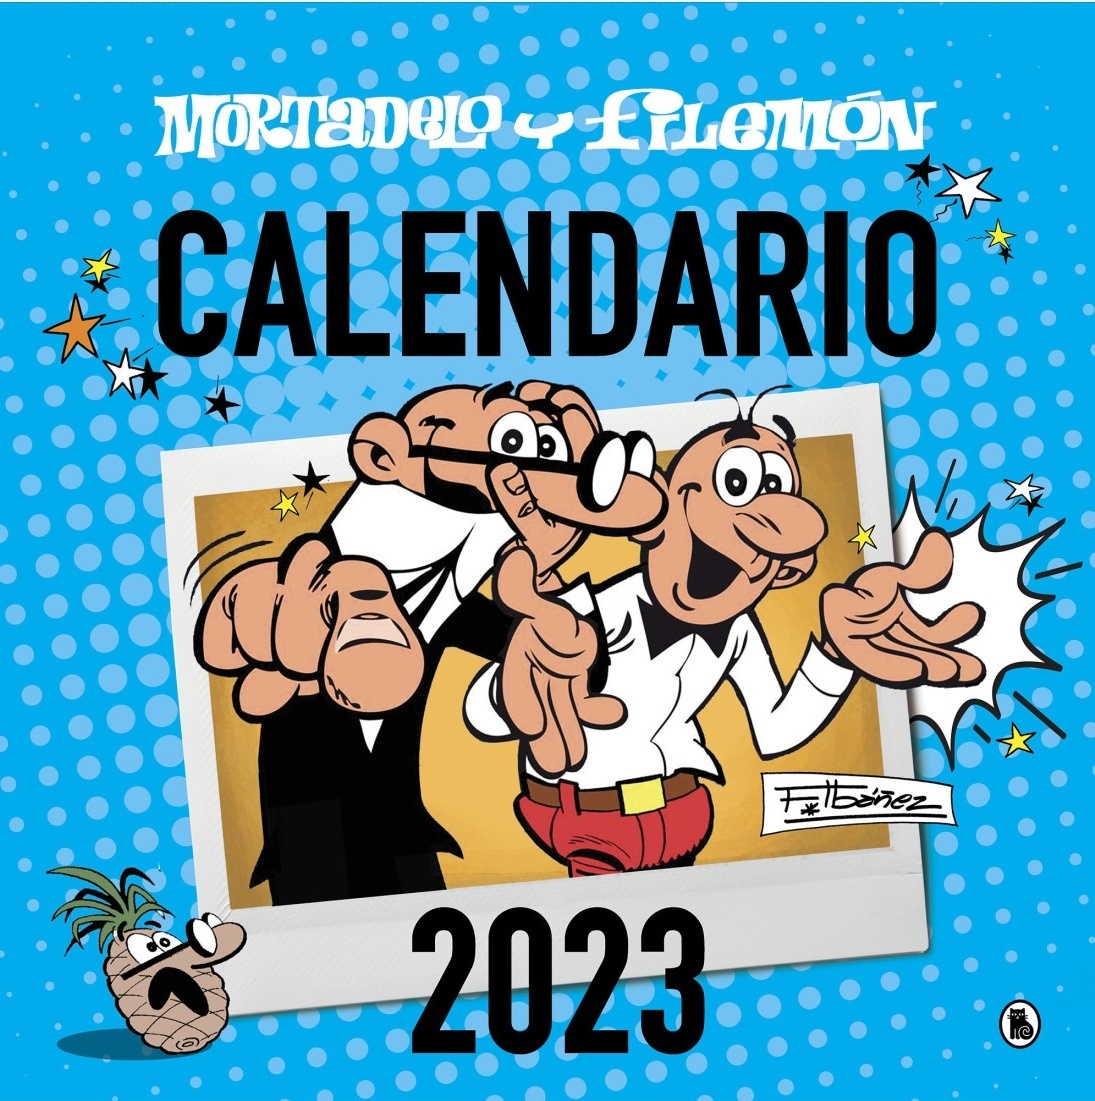 Calendario Mortadelo y Filemón 2023. 